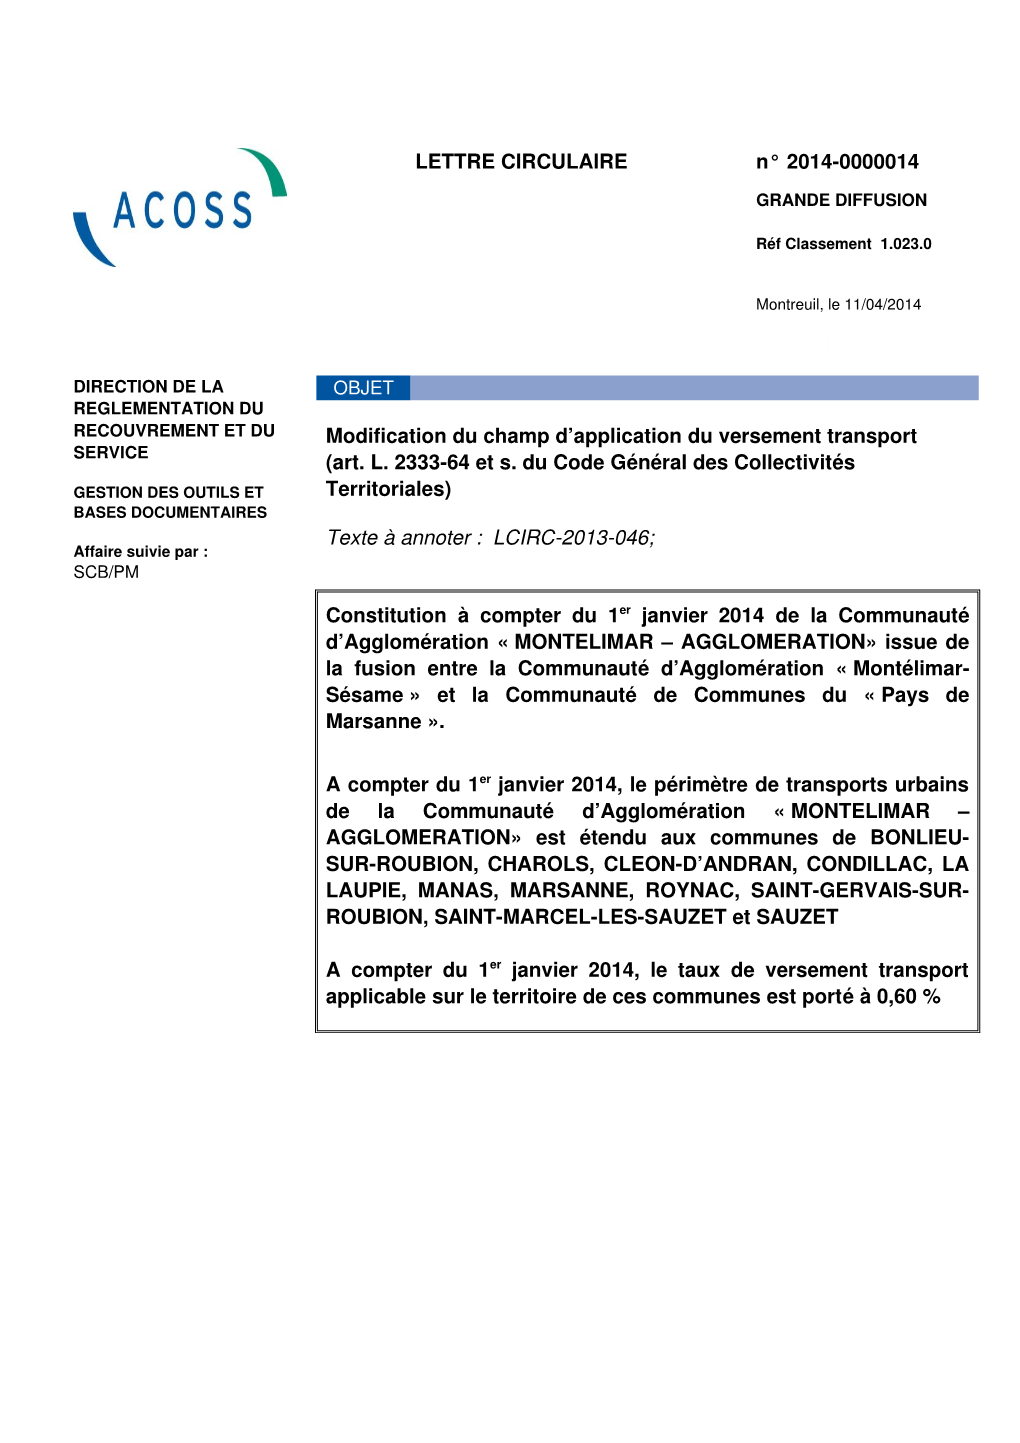 LETTRE CIRCULAIRE N° 20140000014 Modification Du Champ D'application Du Versement Transport